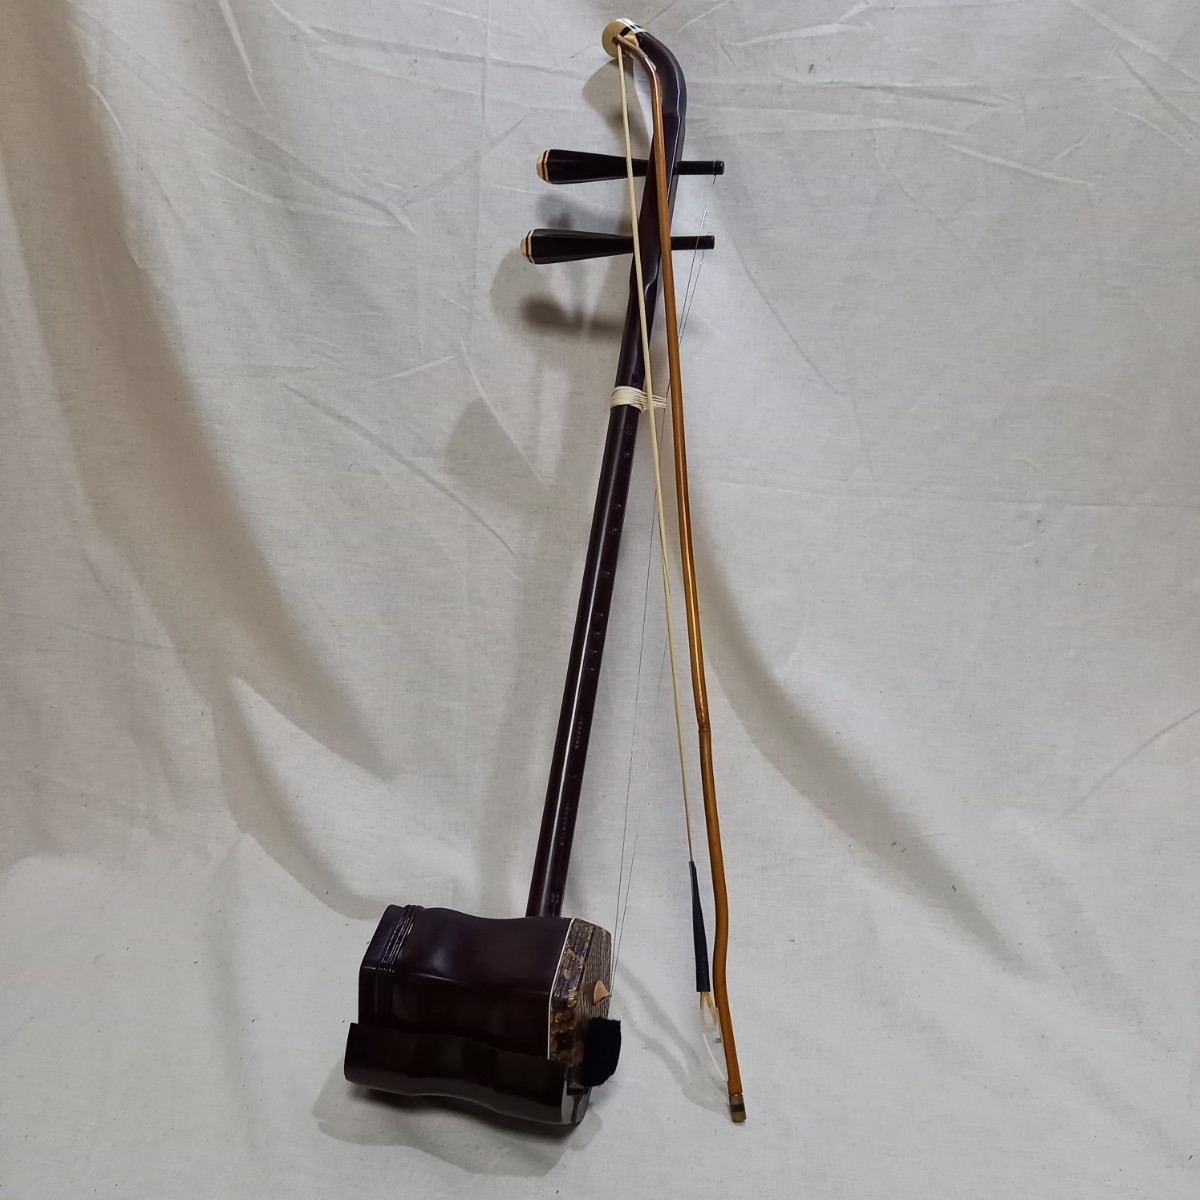 上海式敦煌牌 二胡 中国楽器 弦楽器 民族楽器 胡弓 ハードケース付属の画像1